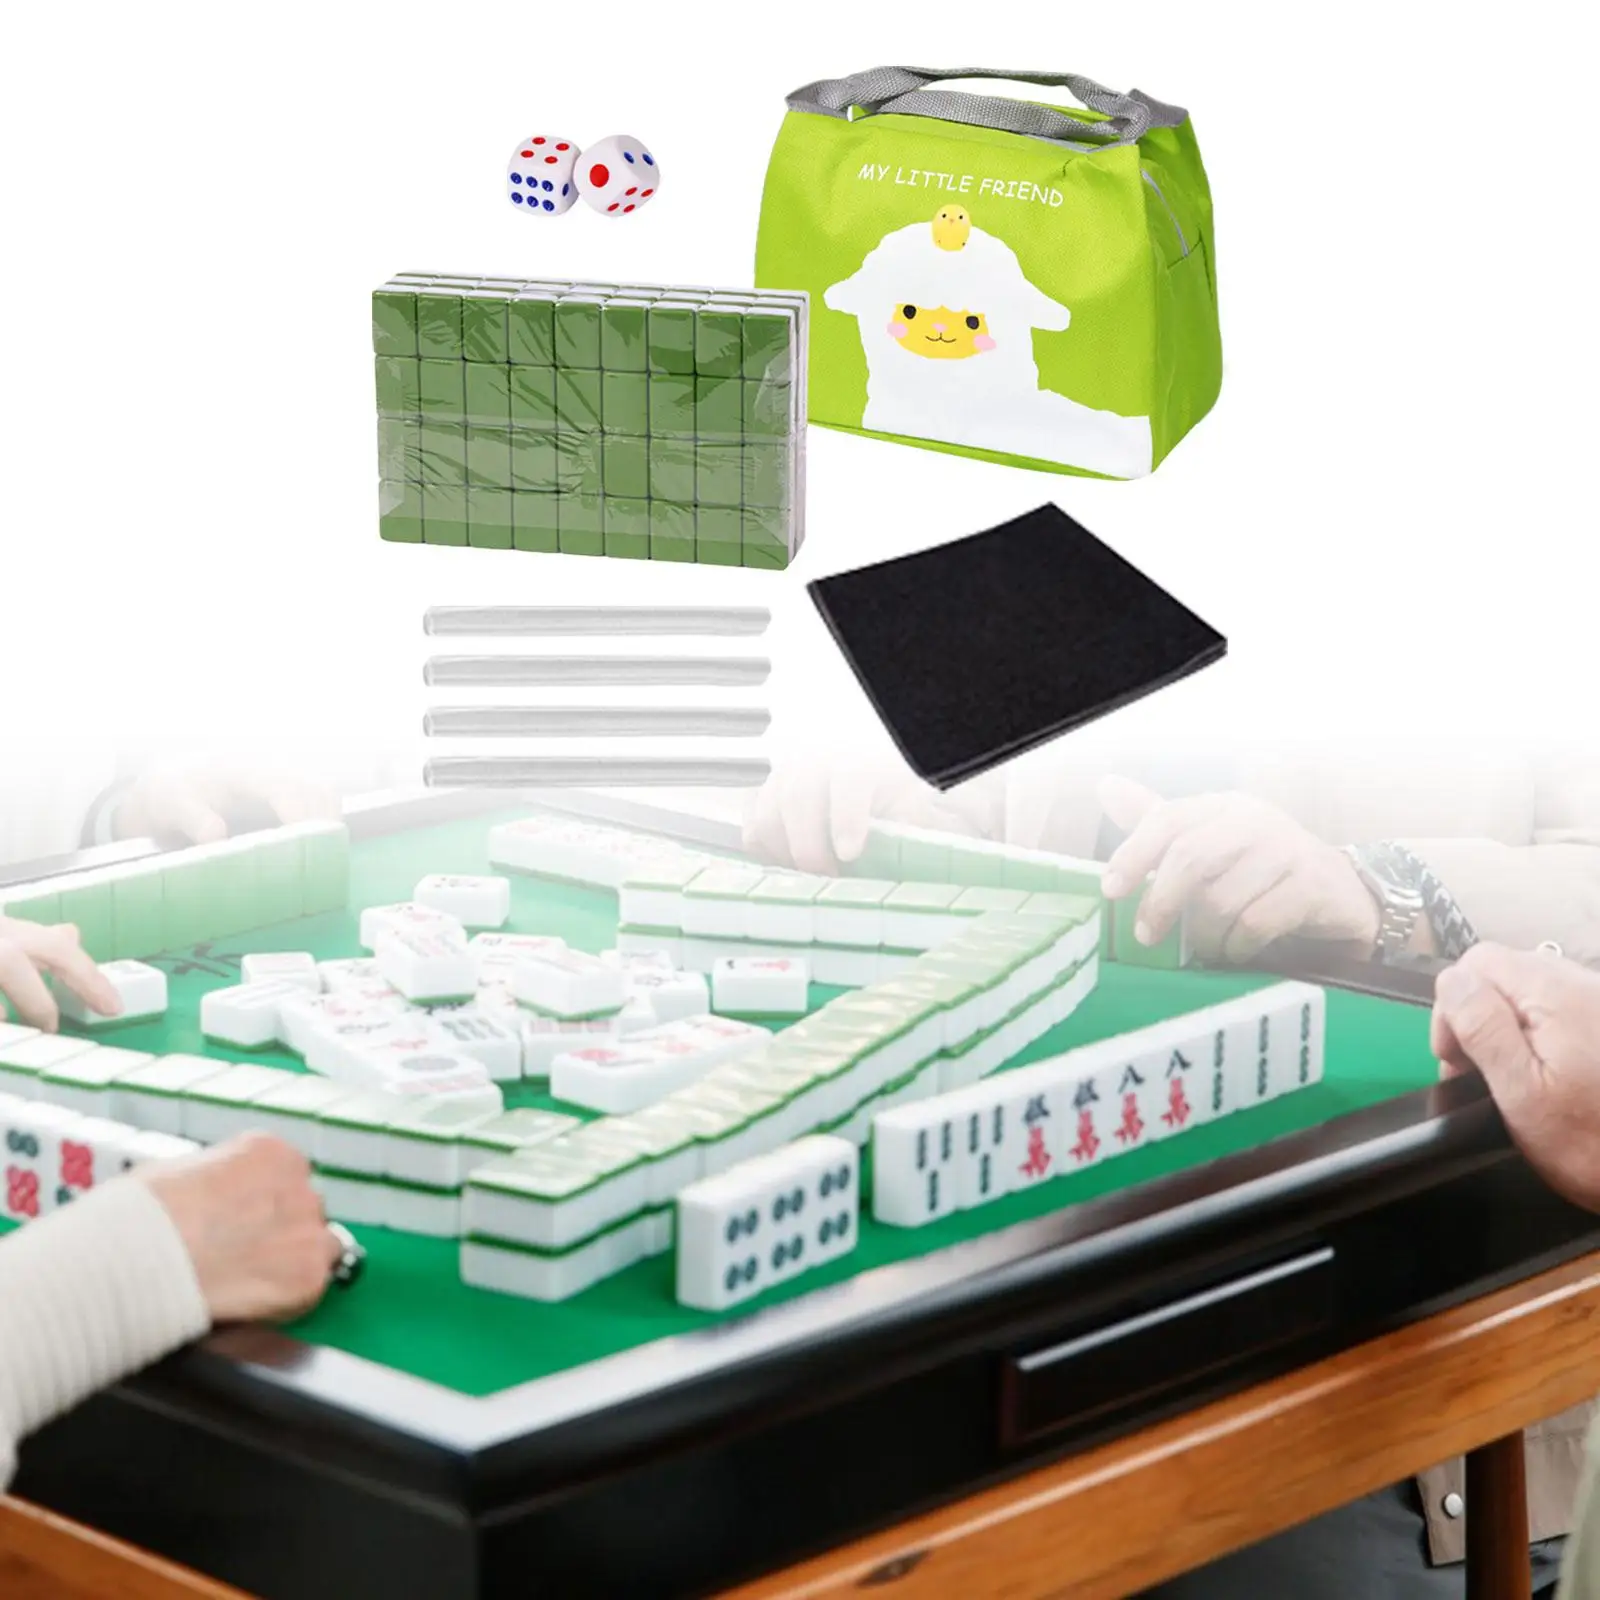 Travel Mahjong Set Chinese Mahjong Toy with Portable Bag Mini Mahjong Classic Tiles Games for Families